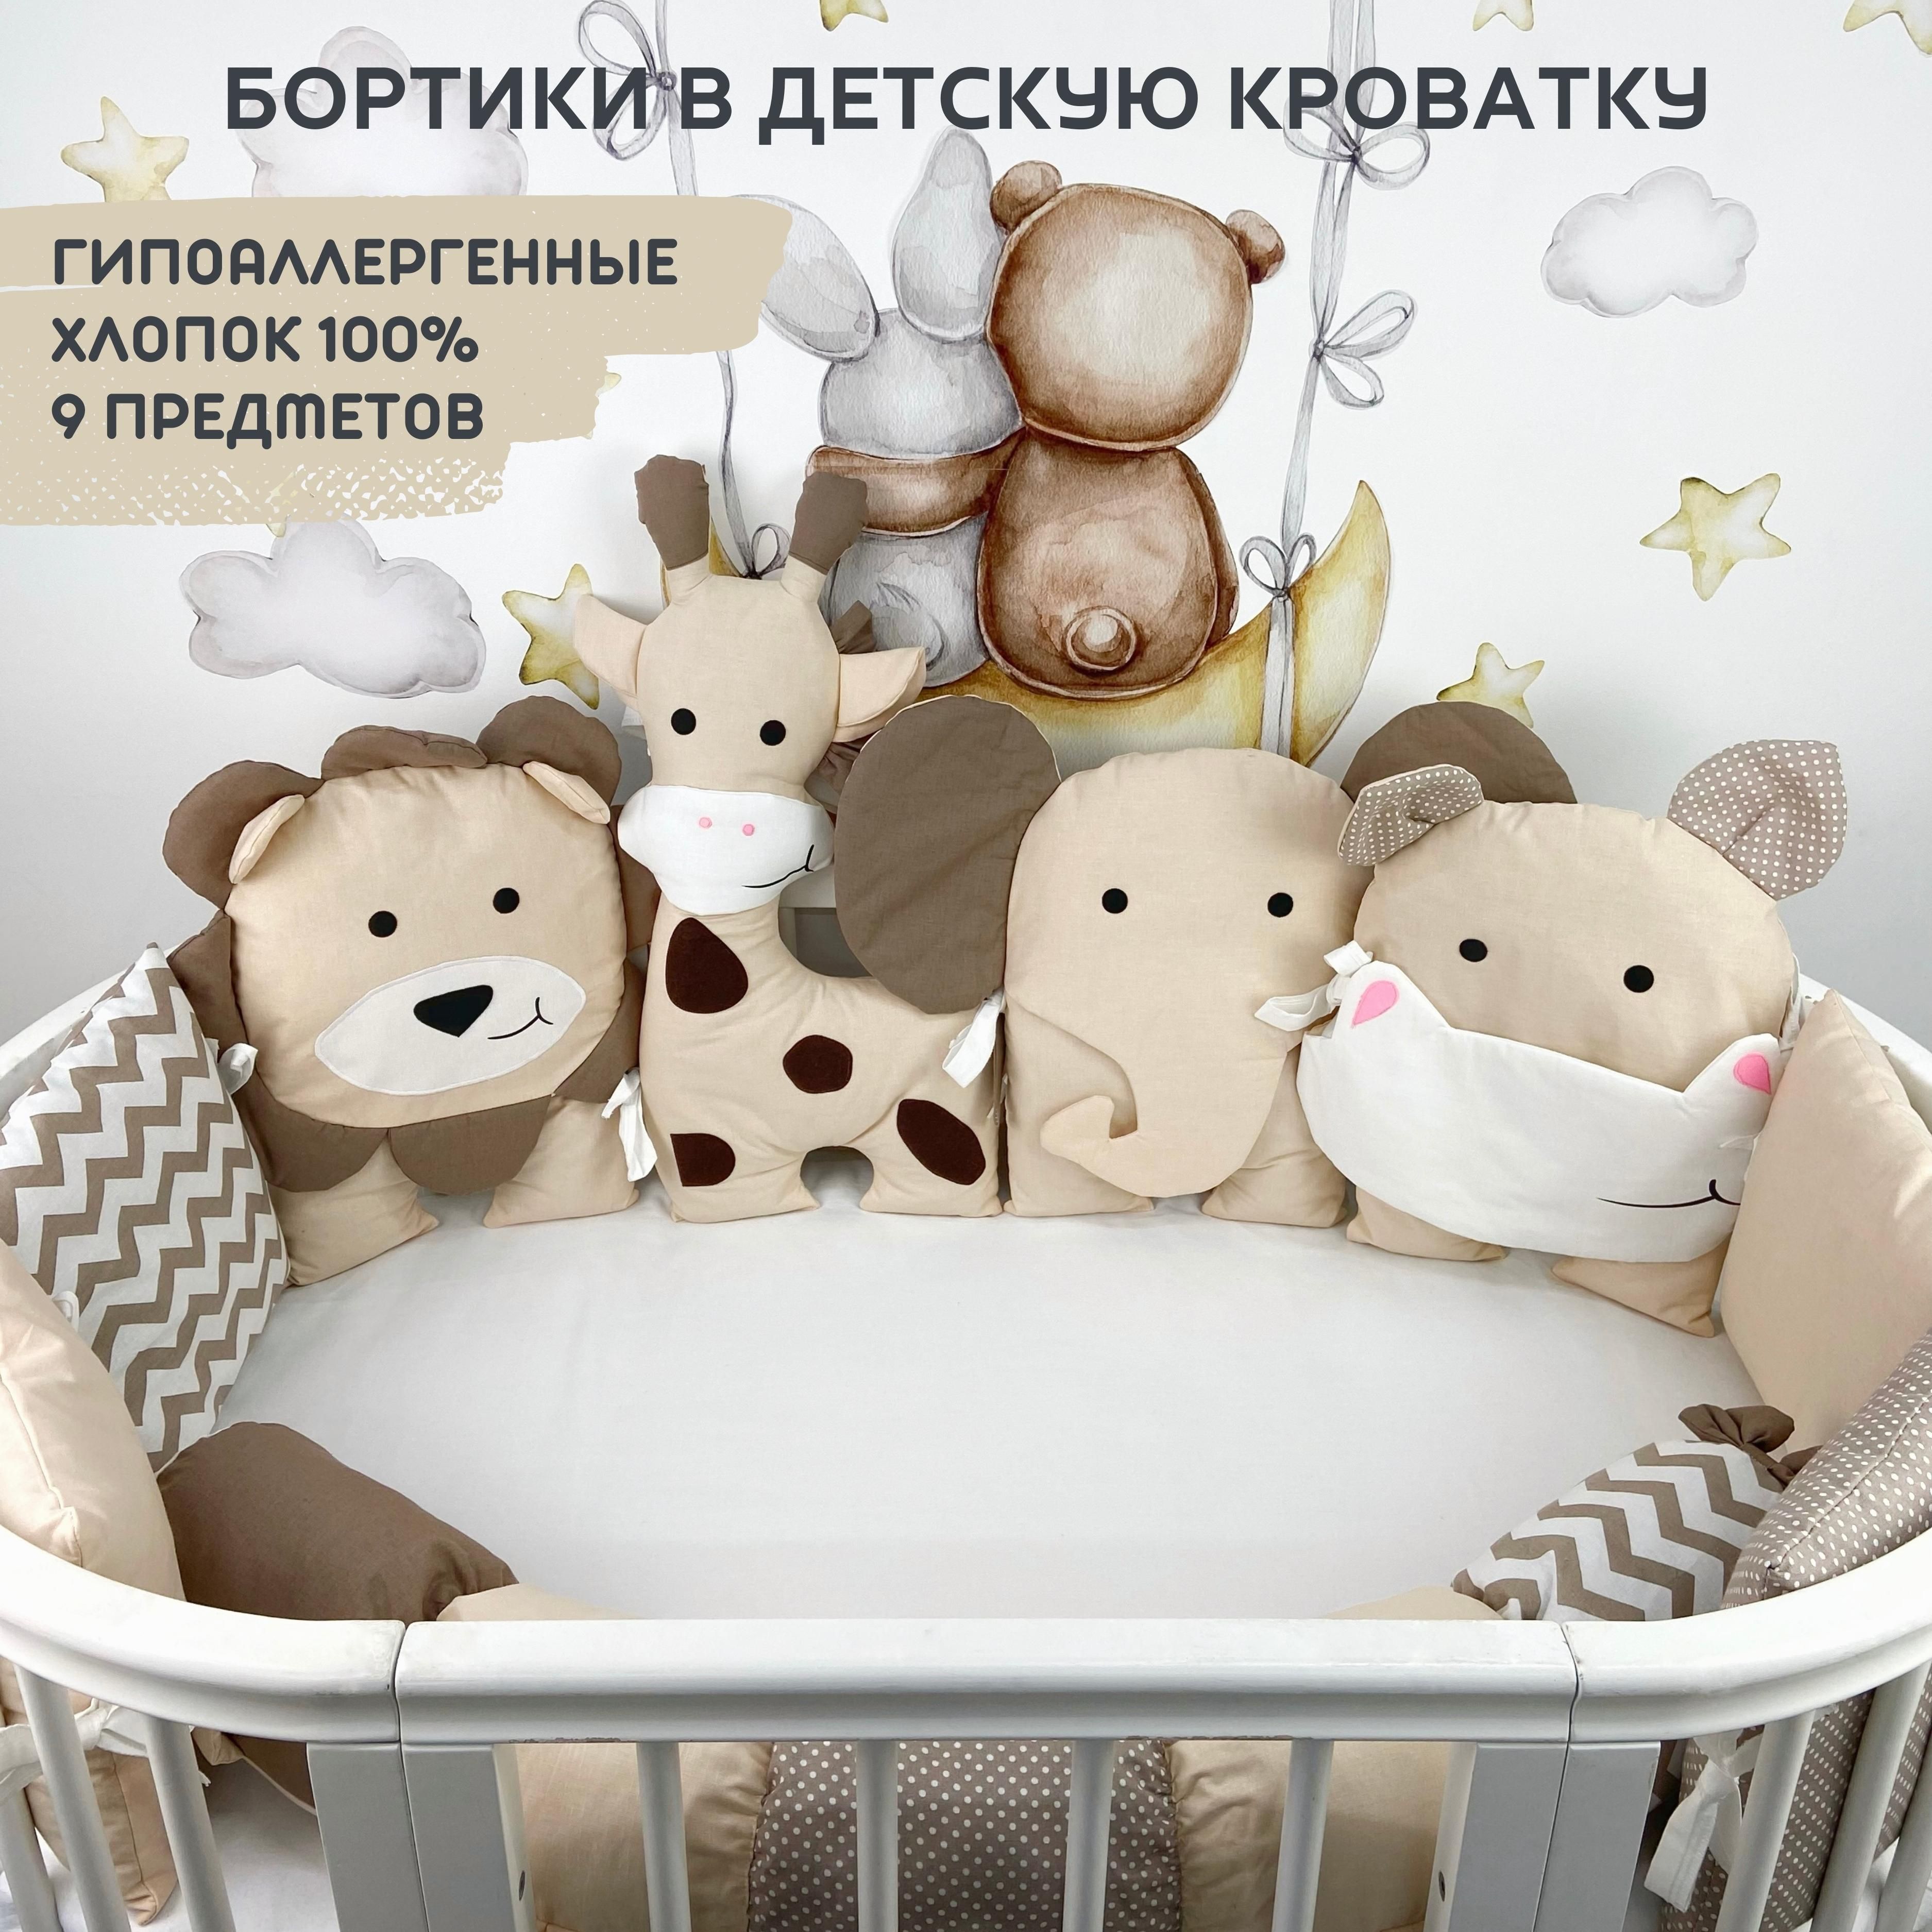 Бортики в кроватку для новорожденных — купить в Москве бортики в детскую кроватку в баштрен.рф